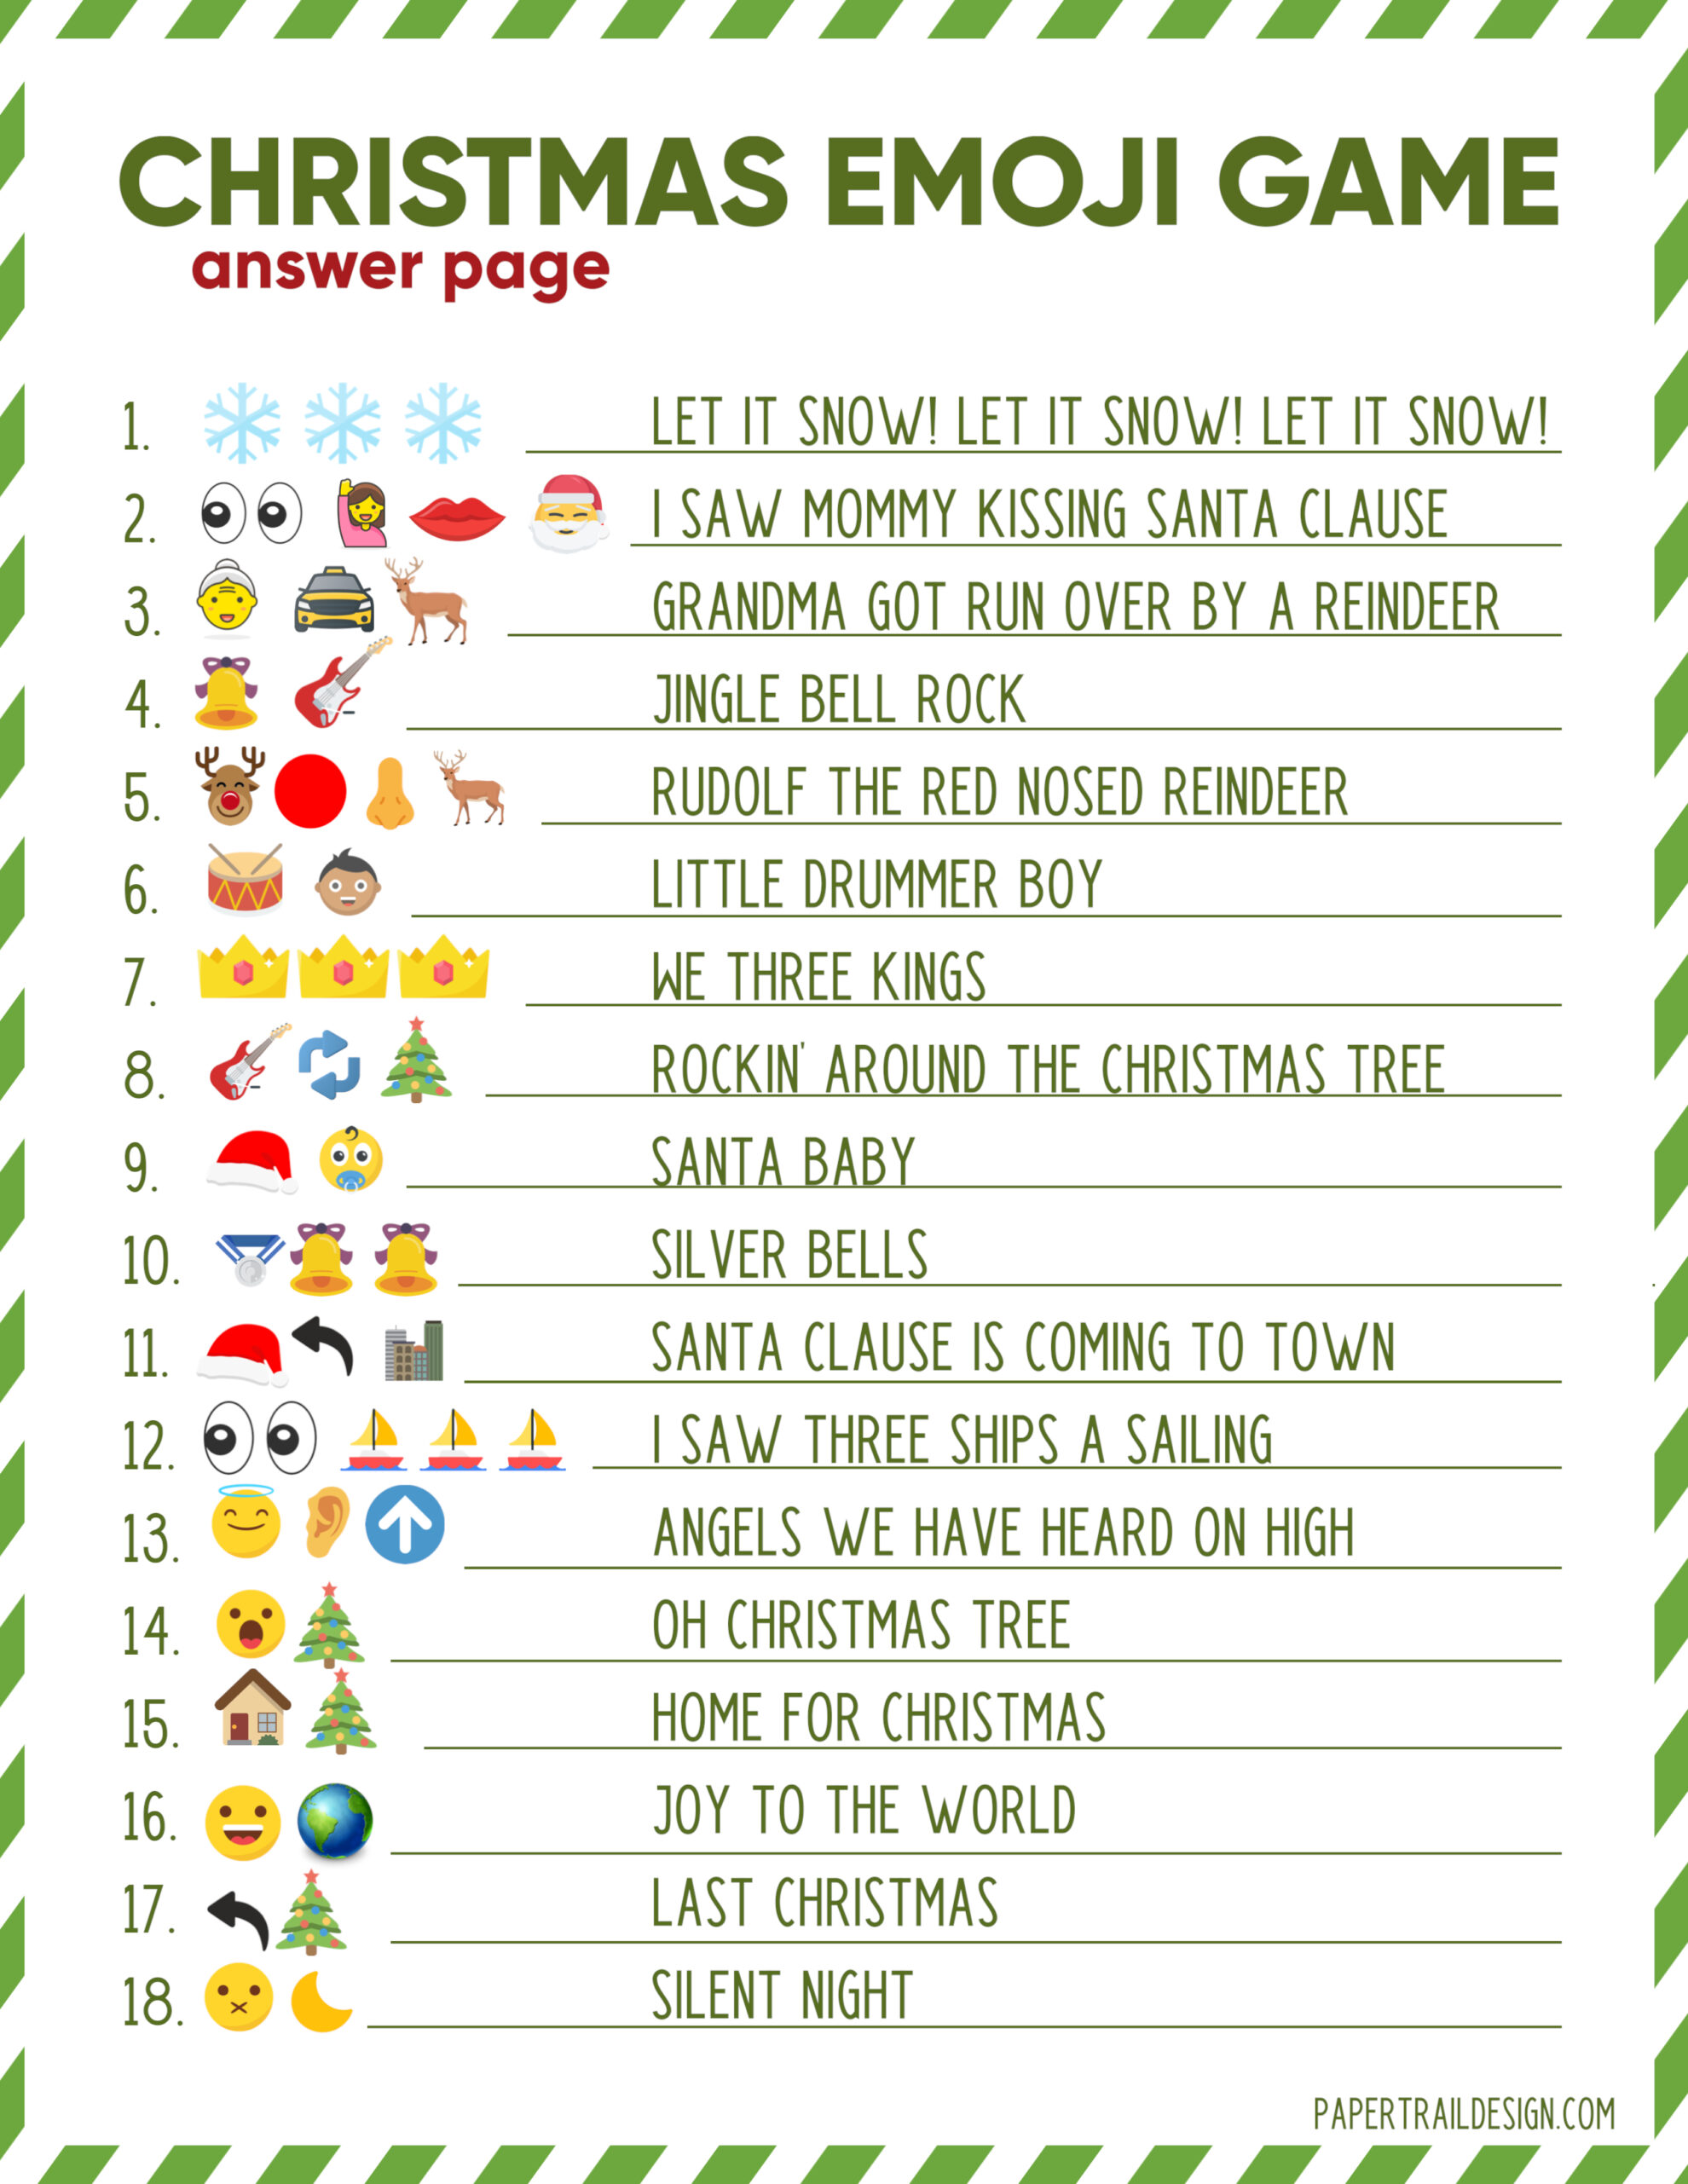 free-printable-christmas-emoji-game-printable-world-holiday